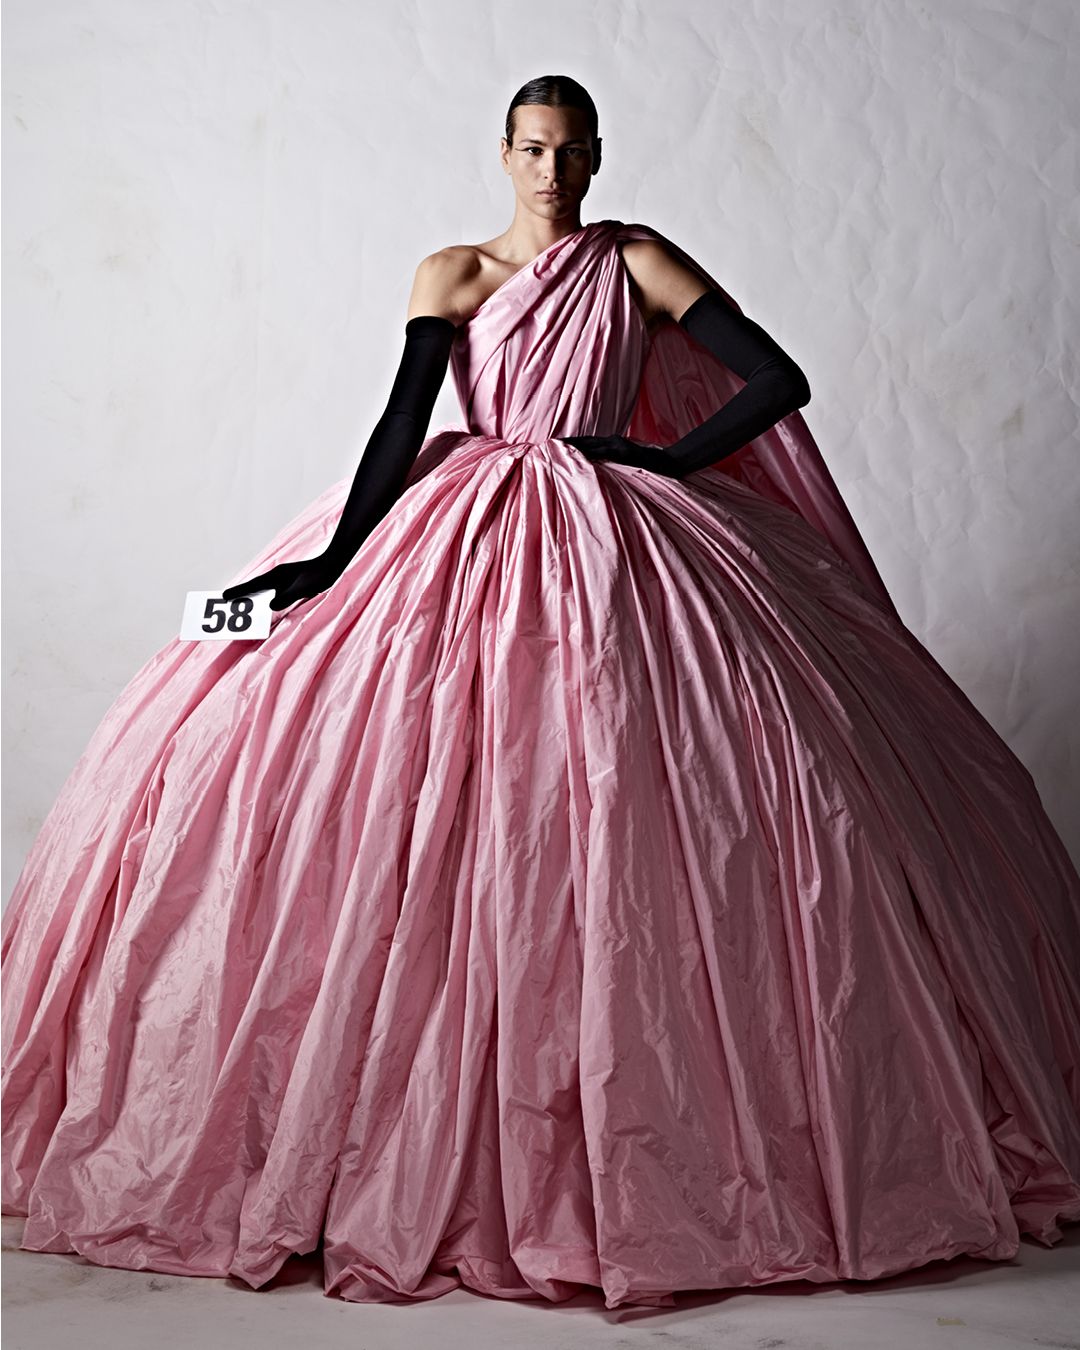 Le foto della sfilata Balenciaga Haute Couture a/i 22 - immagine 56